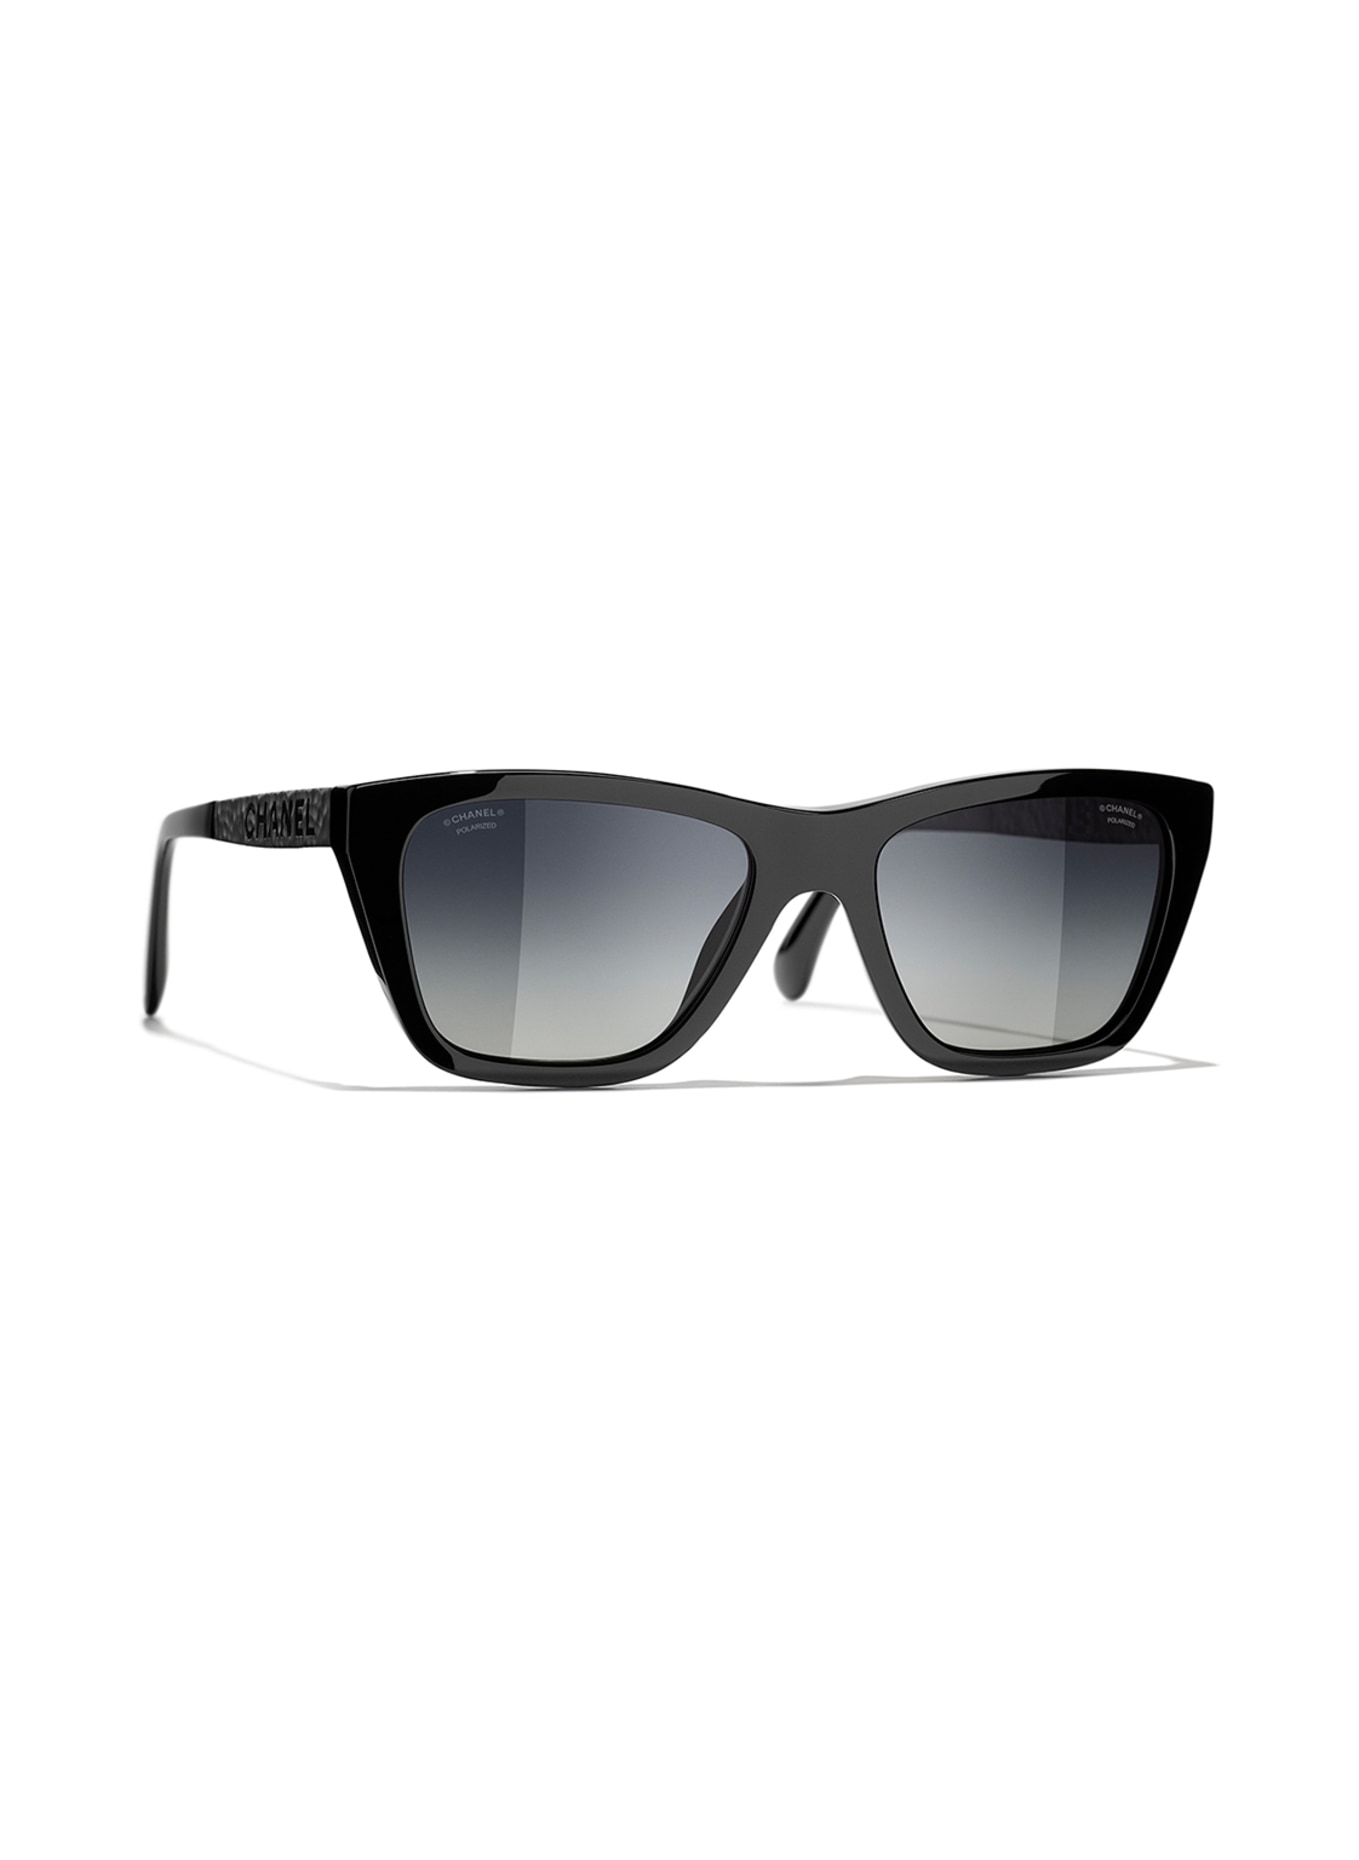 CHANEL Sunglasses Eyewear 5714 140 Teardrop Tortoiseshell Mint Men Women  X1307  eBay